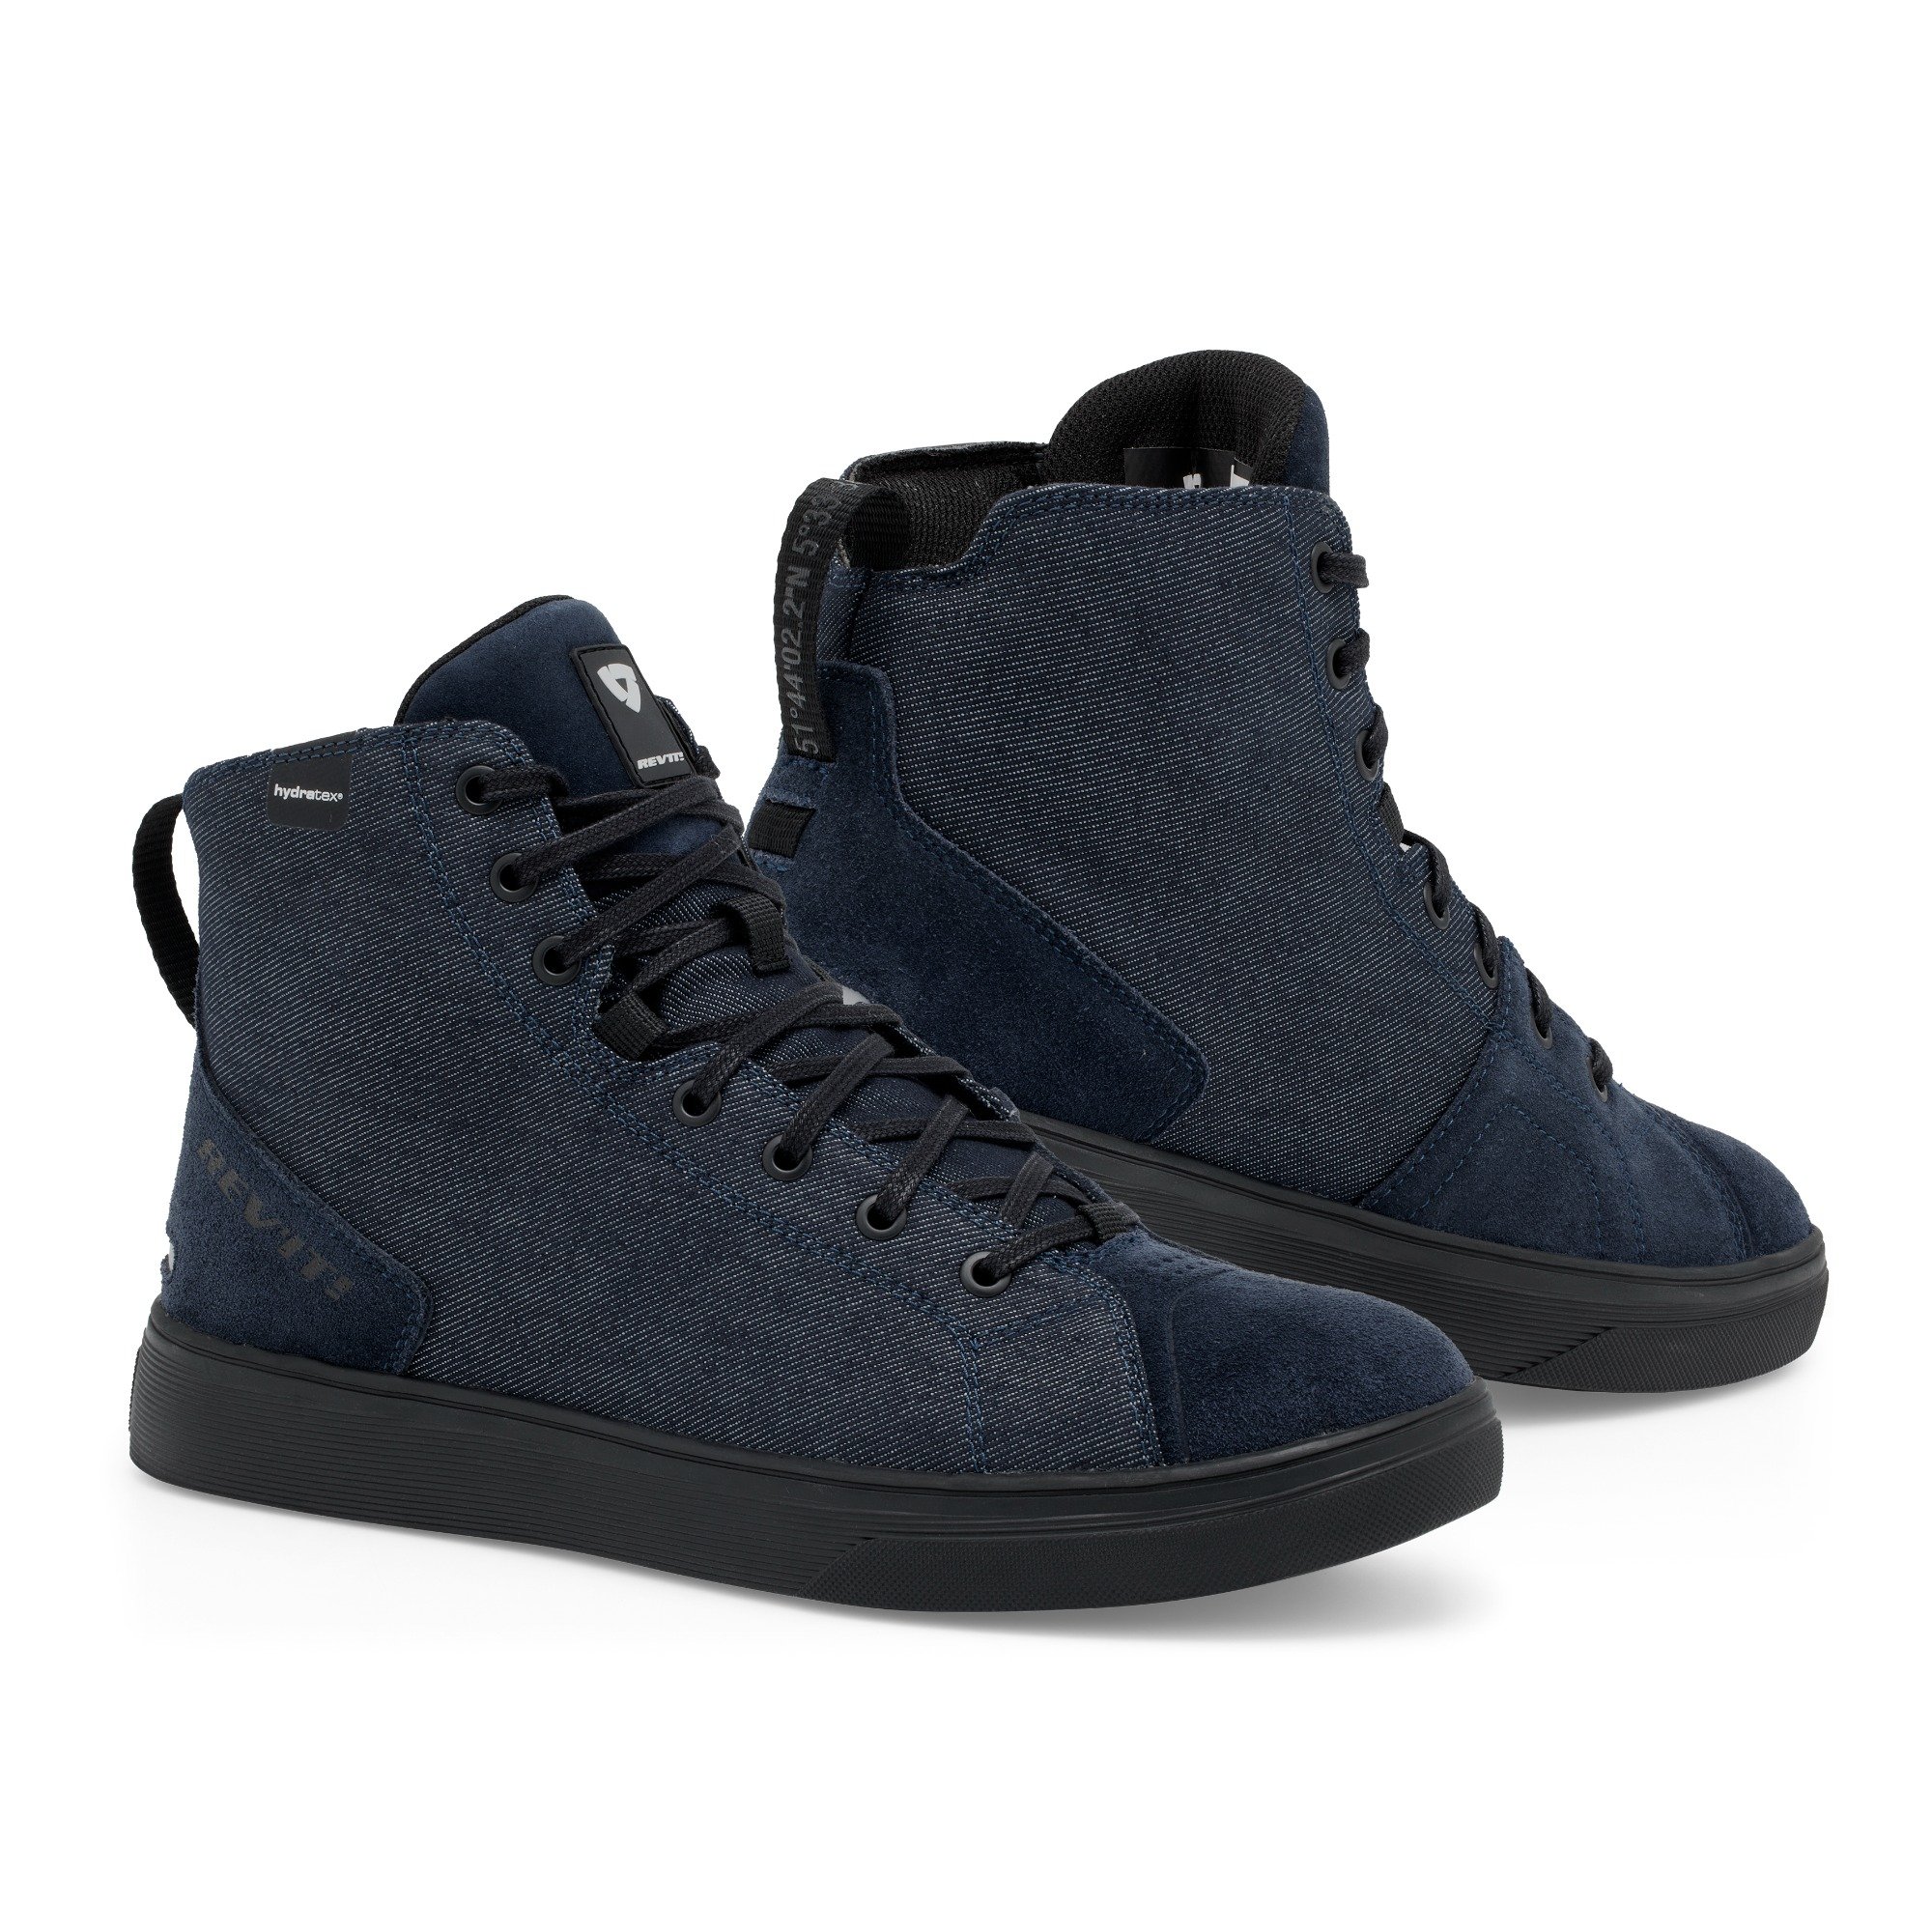 Image of REV'IT! Delta H2O Chaussures Foncé Bleu Noir Taille 43